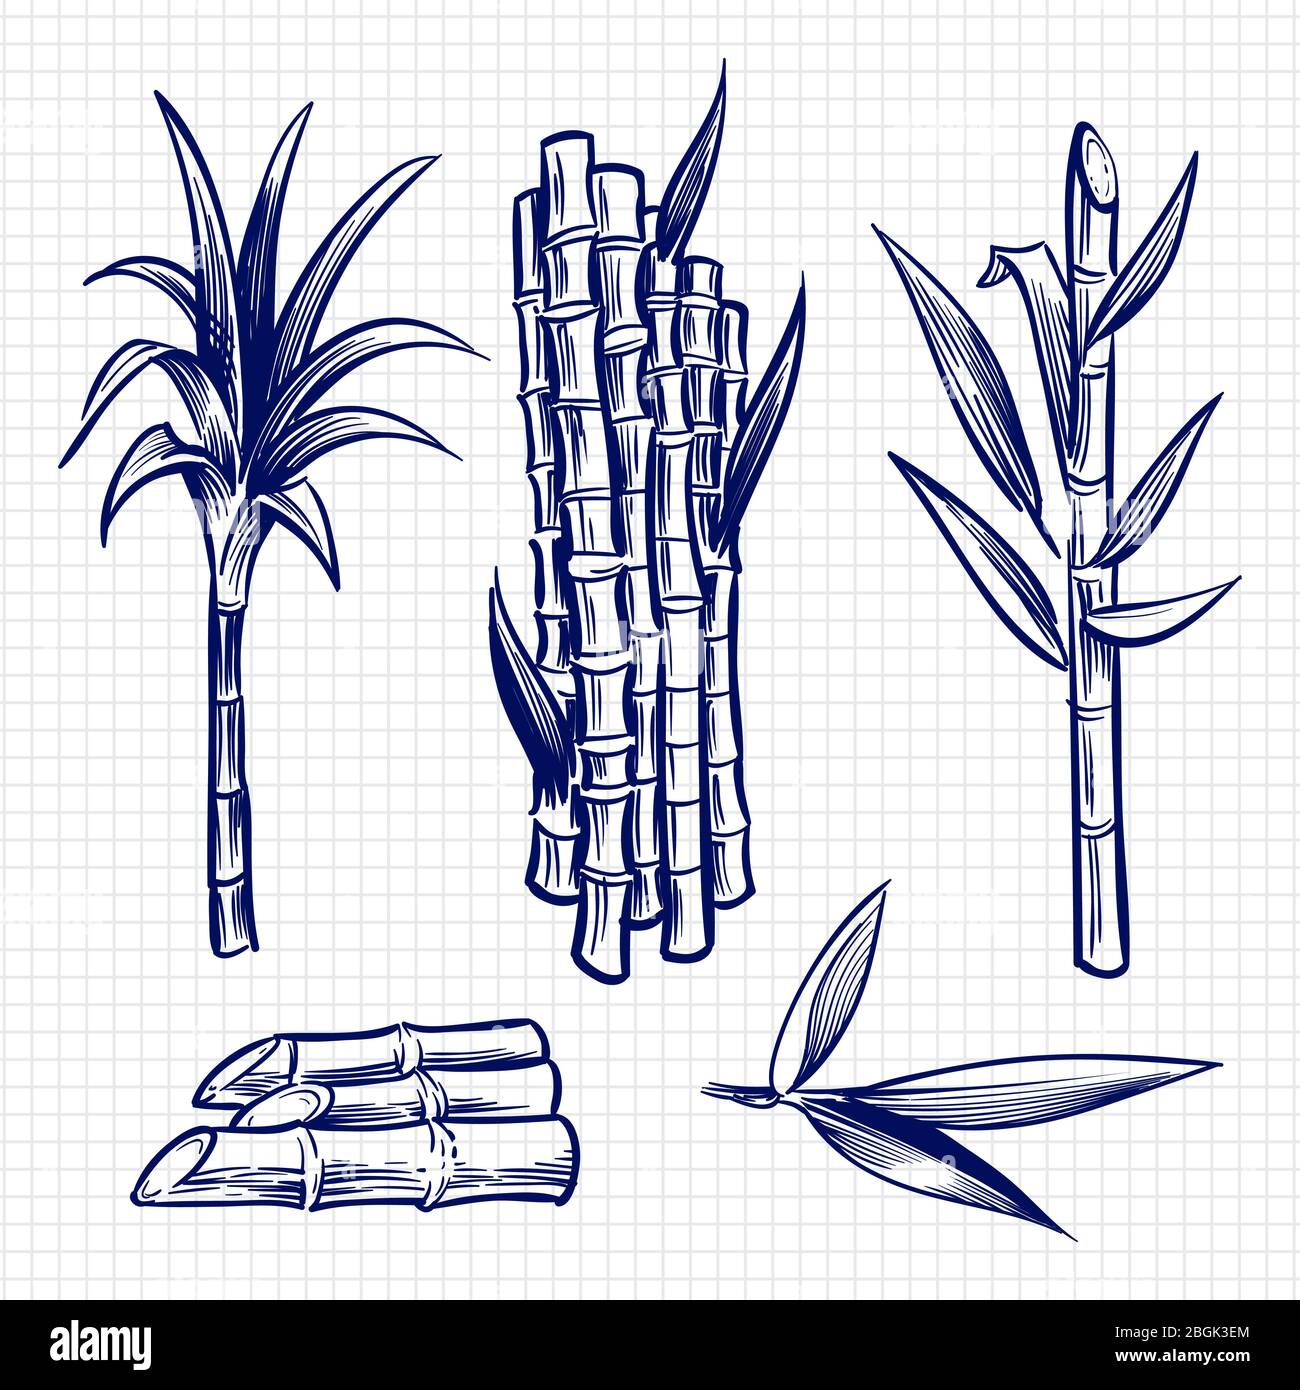 Handgezeichnetes Zuckerrohr Set Vektor-Illustration. Rohrpflanze, Zuckerzusatzstoff Stamm, Zuckerrohr Ernte Stiel Stock Vektor